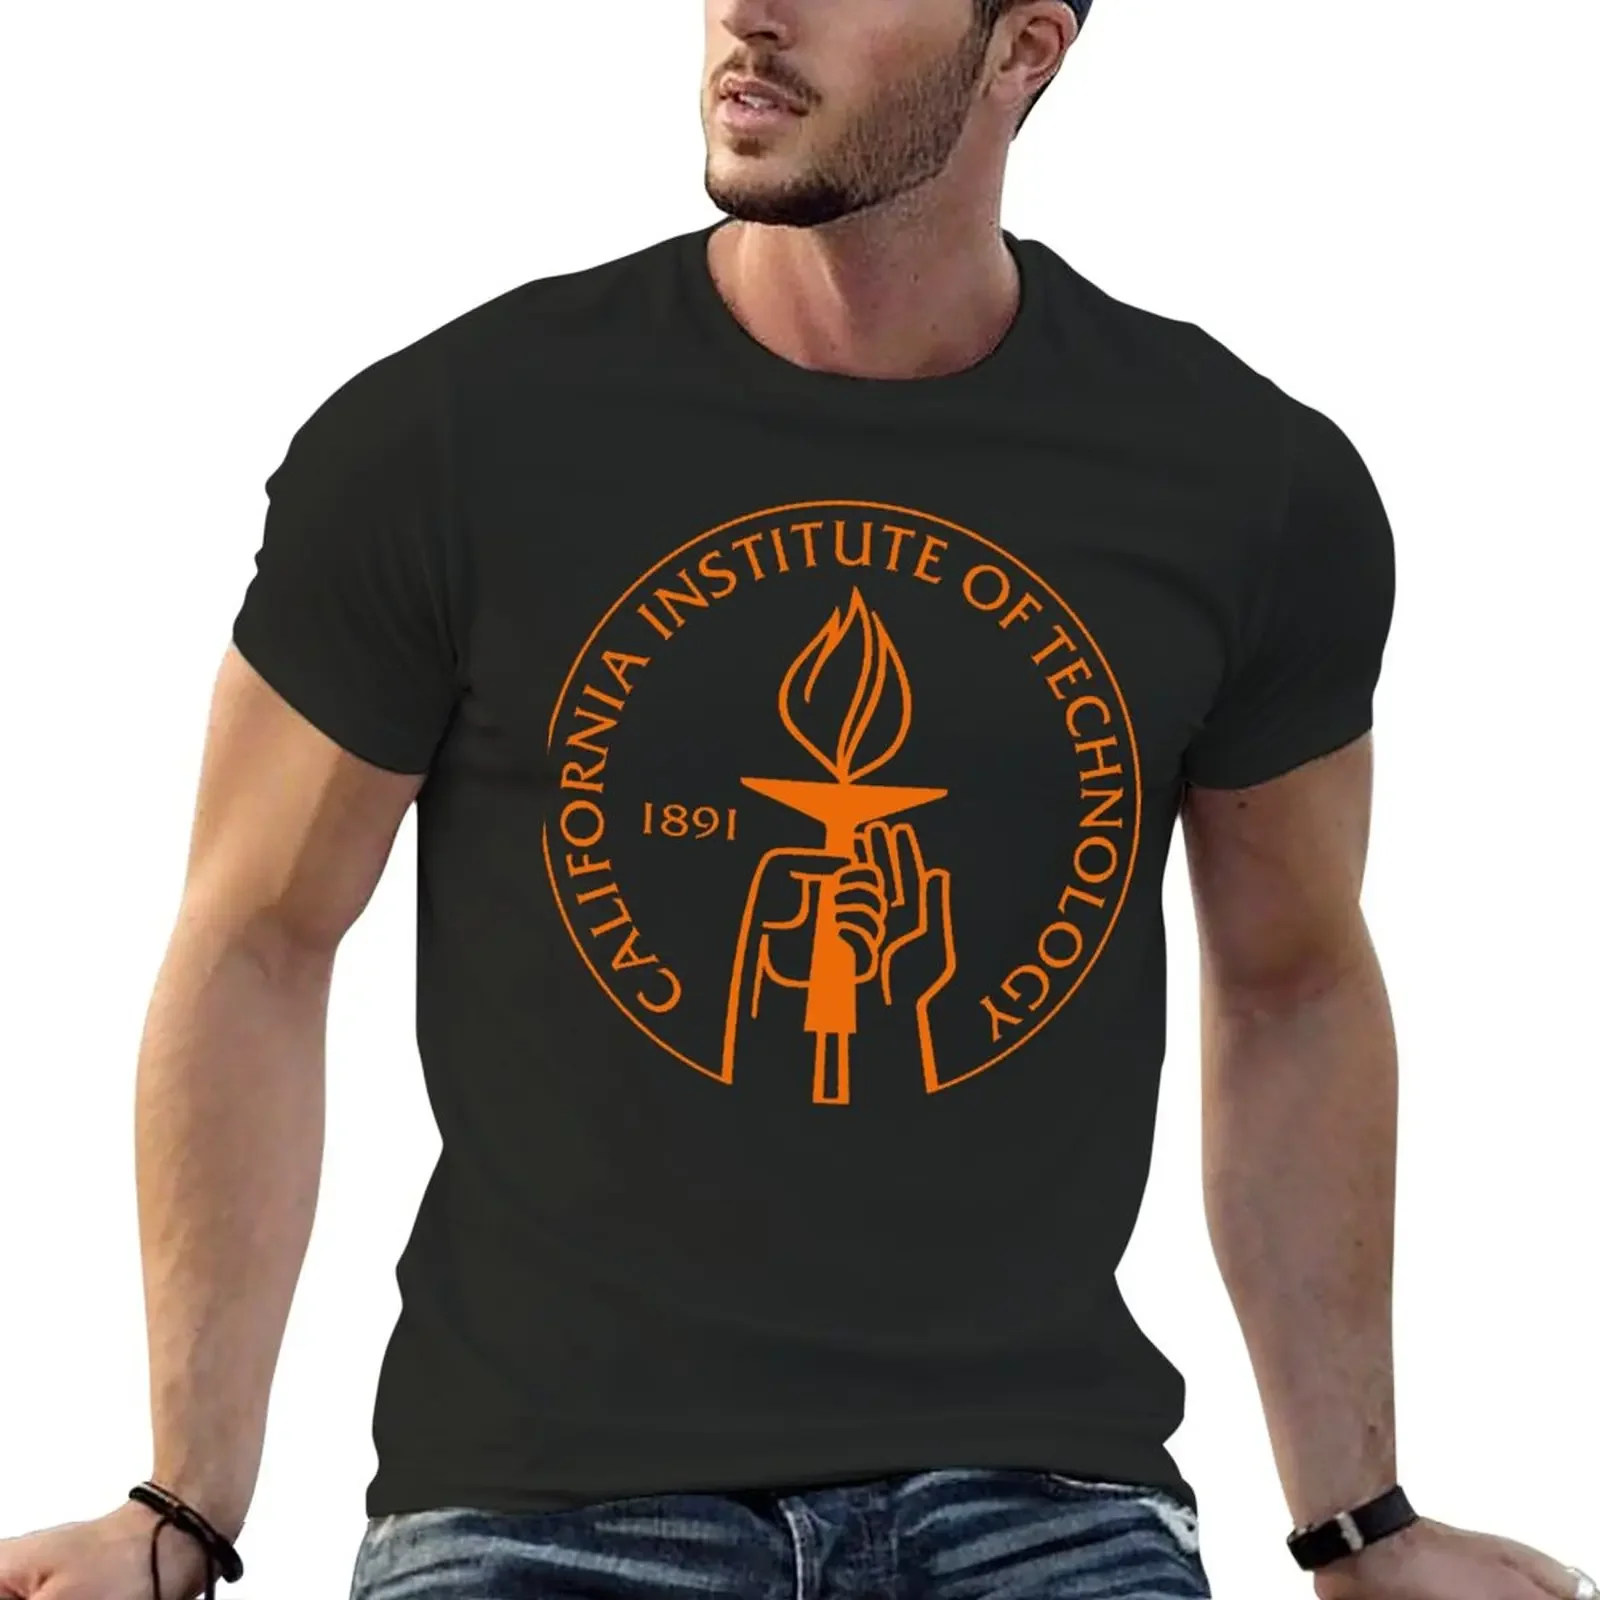 

Футболка с логотипом калифорнийского Института технологии, летний топ для мужчин, черные футболки